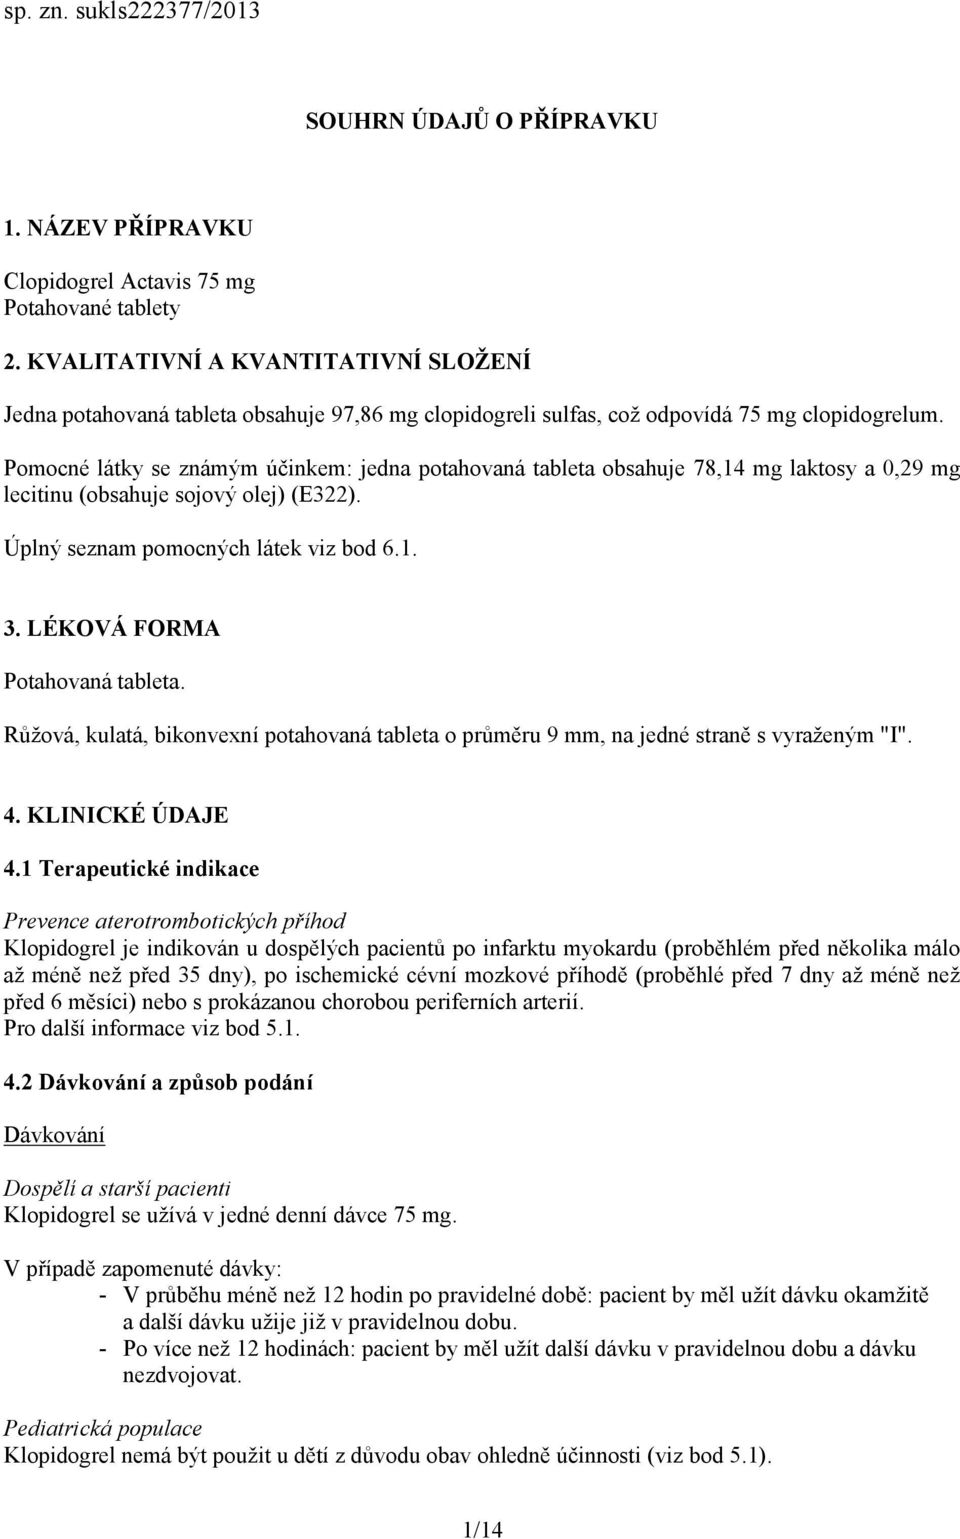 Pomocné látky se známým účinkem: jedna potahovaná tableta obsahuje 78,14 mg laktosy a 0,29 mg lecitinu (obsahuje sojový olej) (E322). Úplný seznam pomocných látek viz bod 6.1. 3.